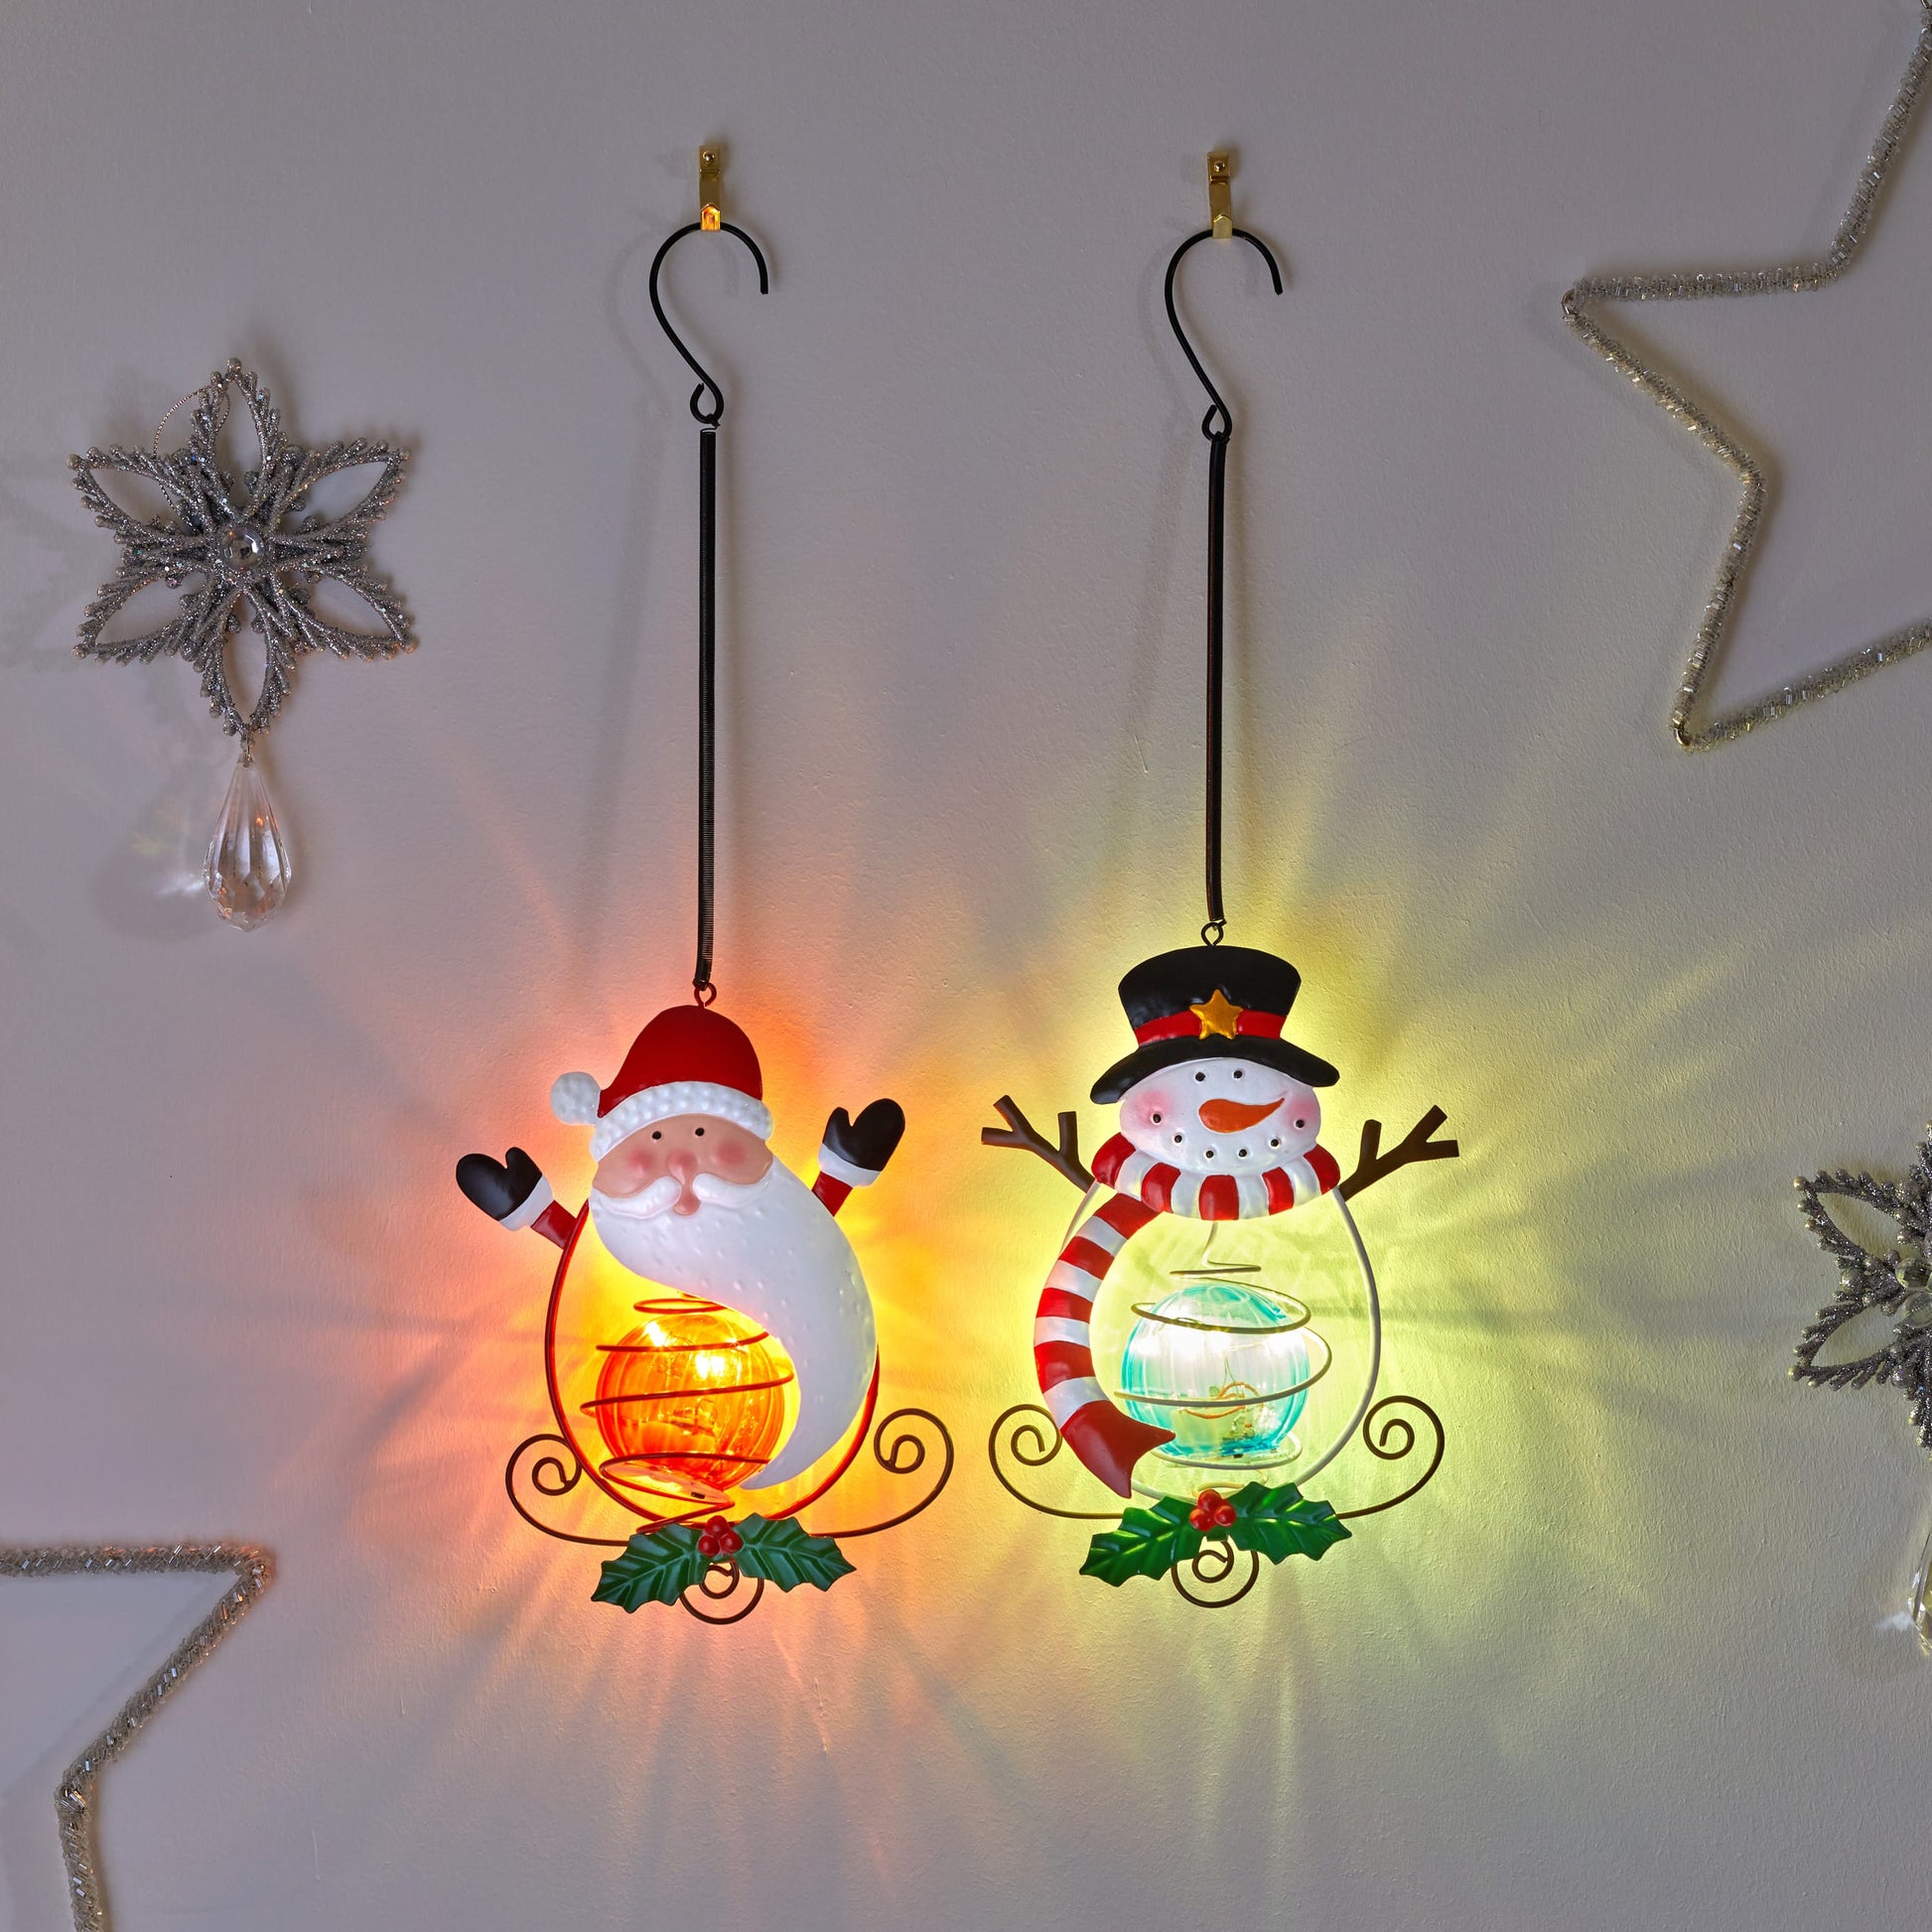 Závesné kovové vianočné dekorácie Santu a snehuliaka s LED osvetlením Bouncy Festive FolkLights od Three Kings